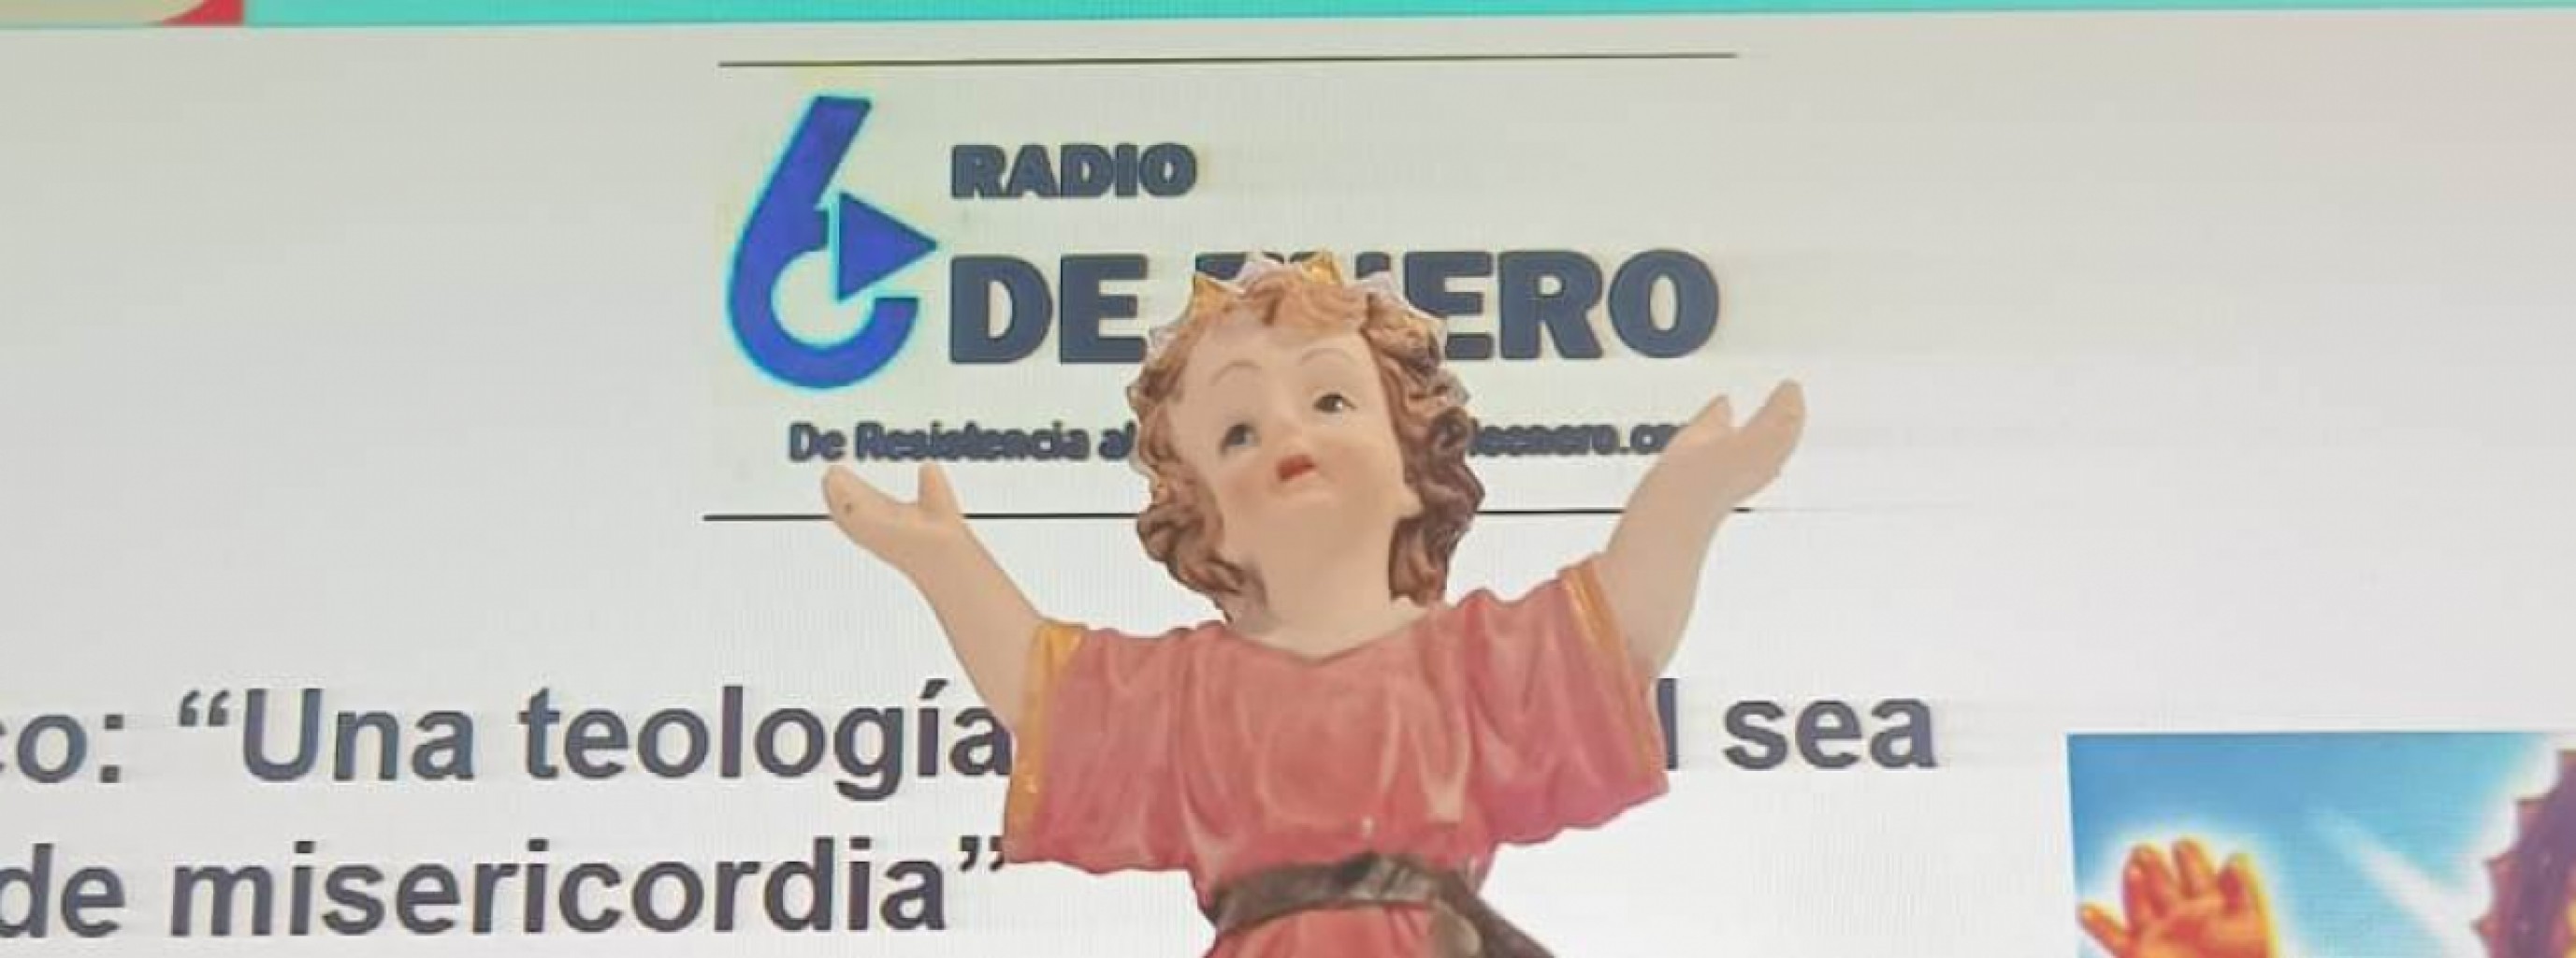 Hoy celebramos al Divino Niño en muchos países de habla hispana | Radio 6  De Enero